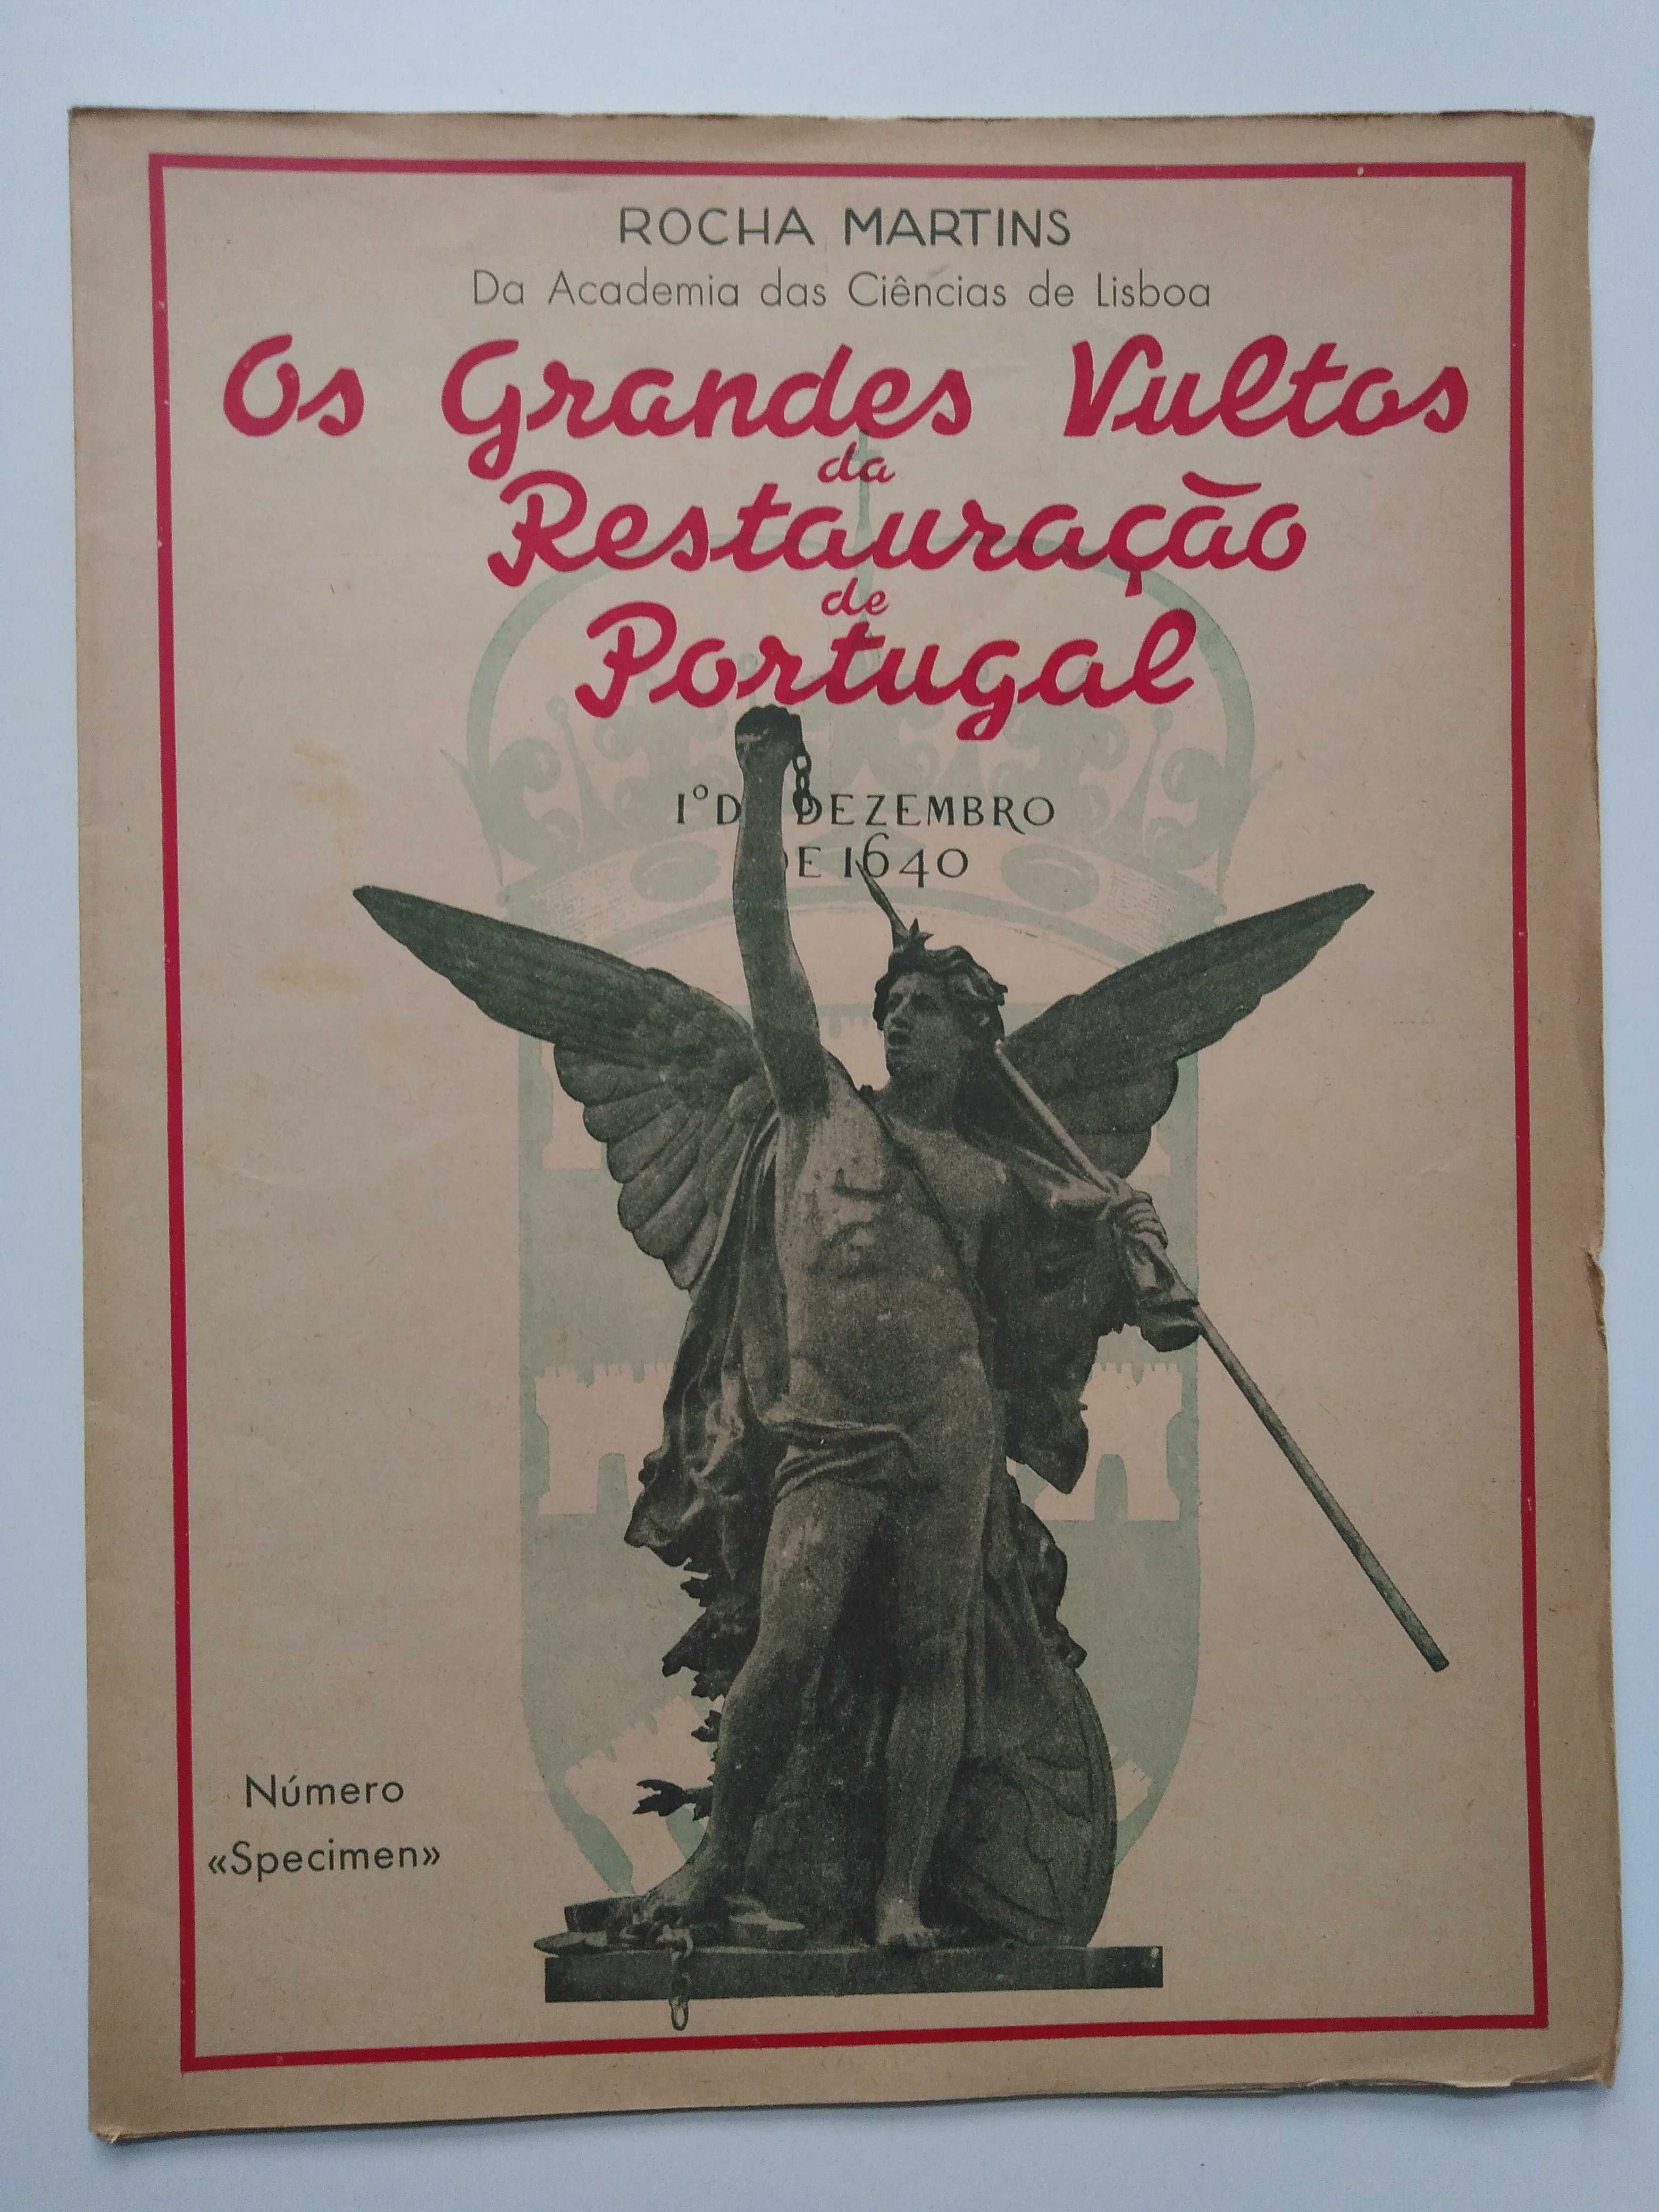 livro: Rocha Martins "Os grandes vultos da Restauração de Portugal"